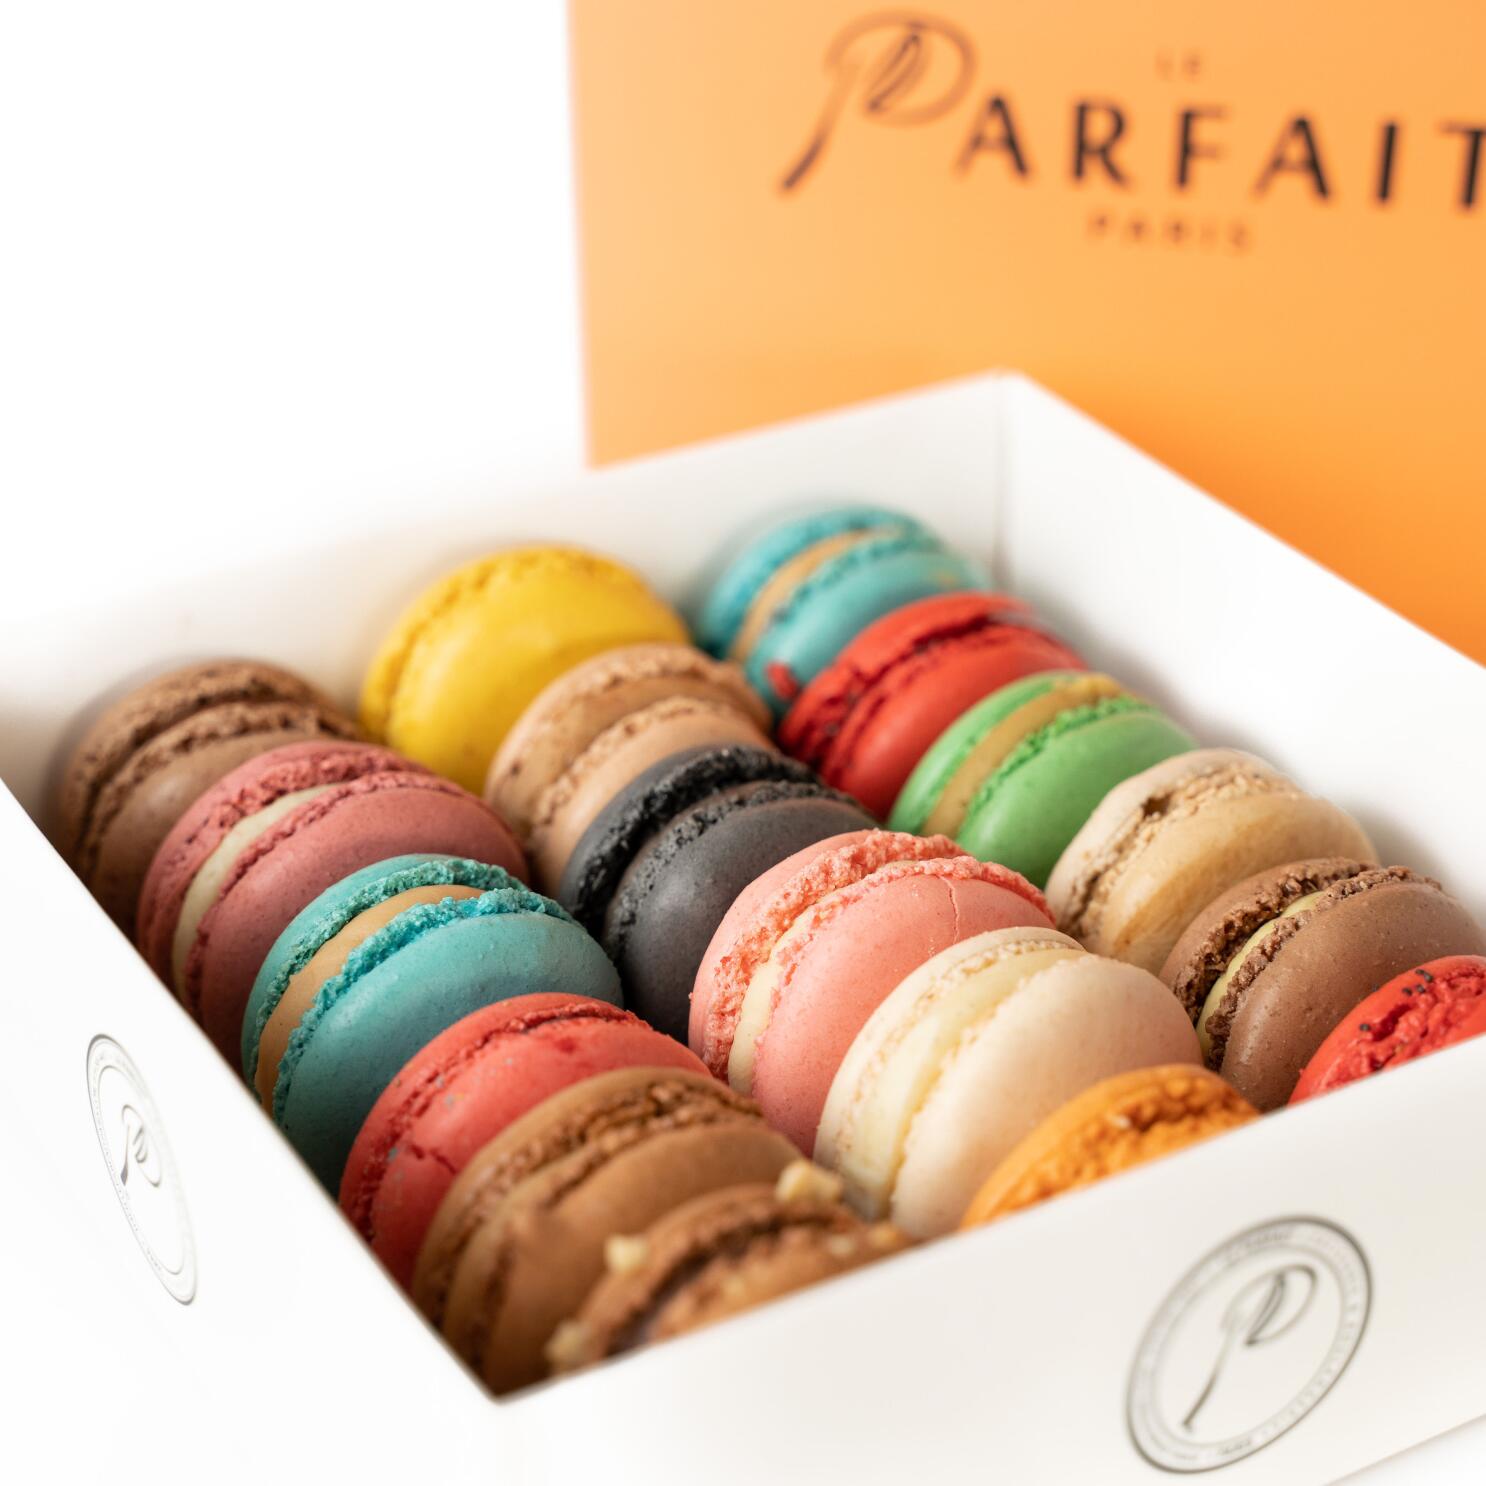 Couple behind San Diego's Le Parfait Paris pastry shops enjoy sweet taste  of success - The San Diego Union-Tribune